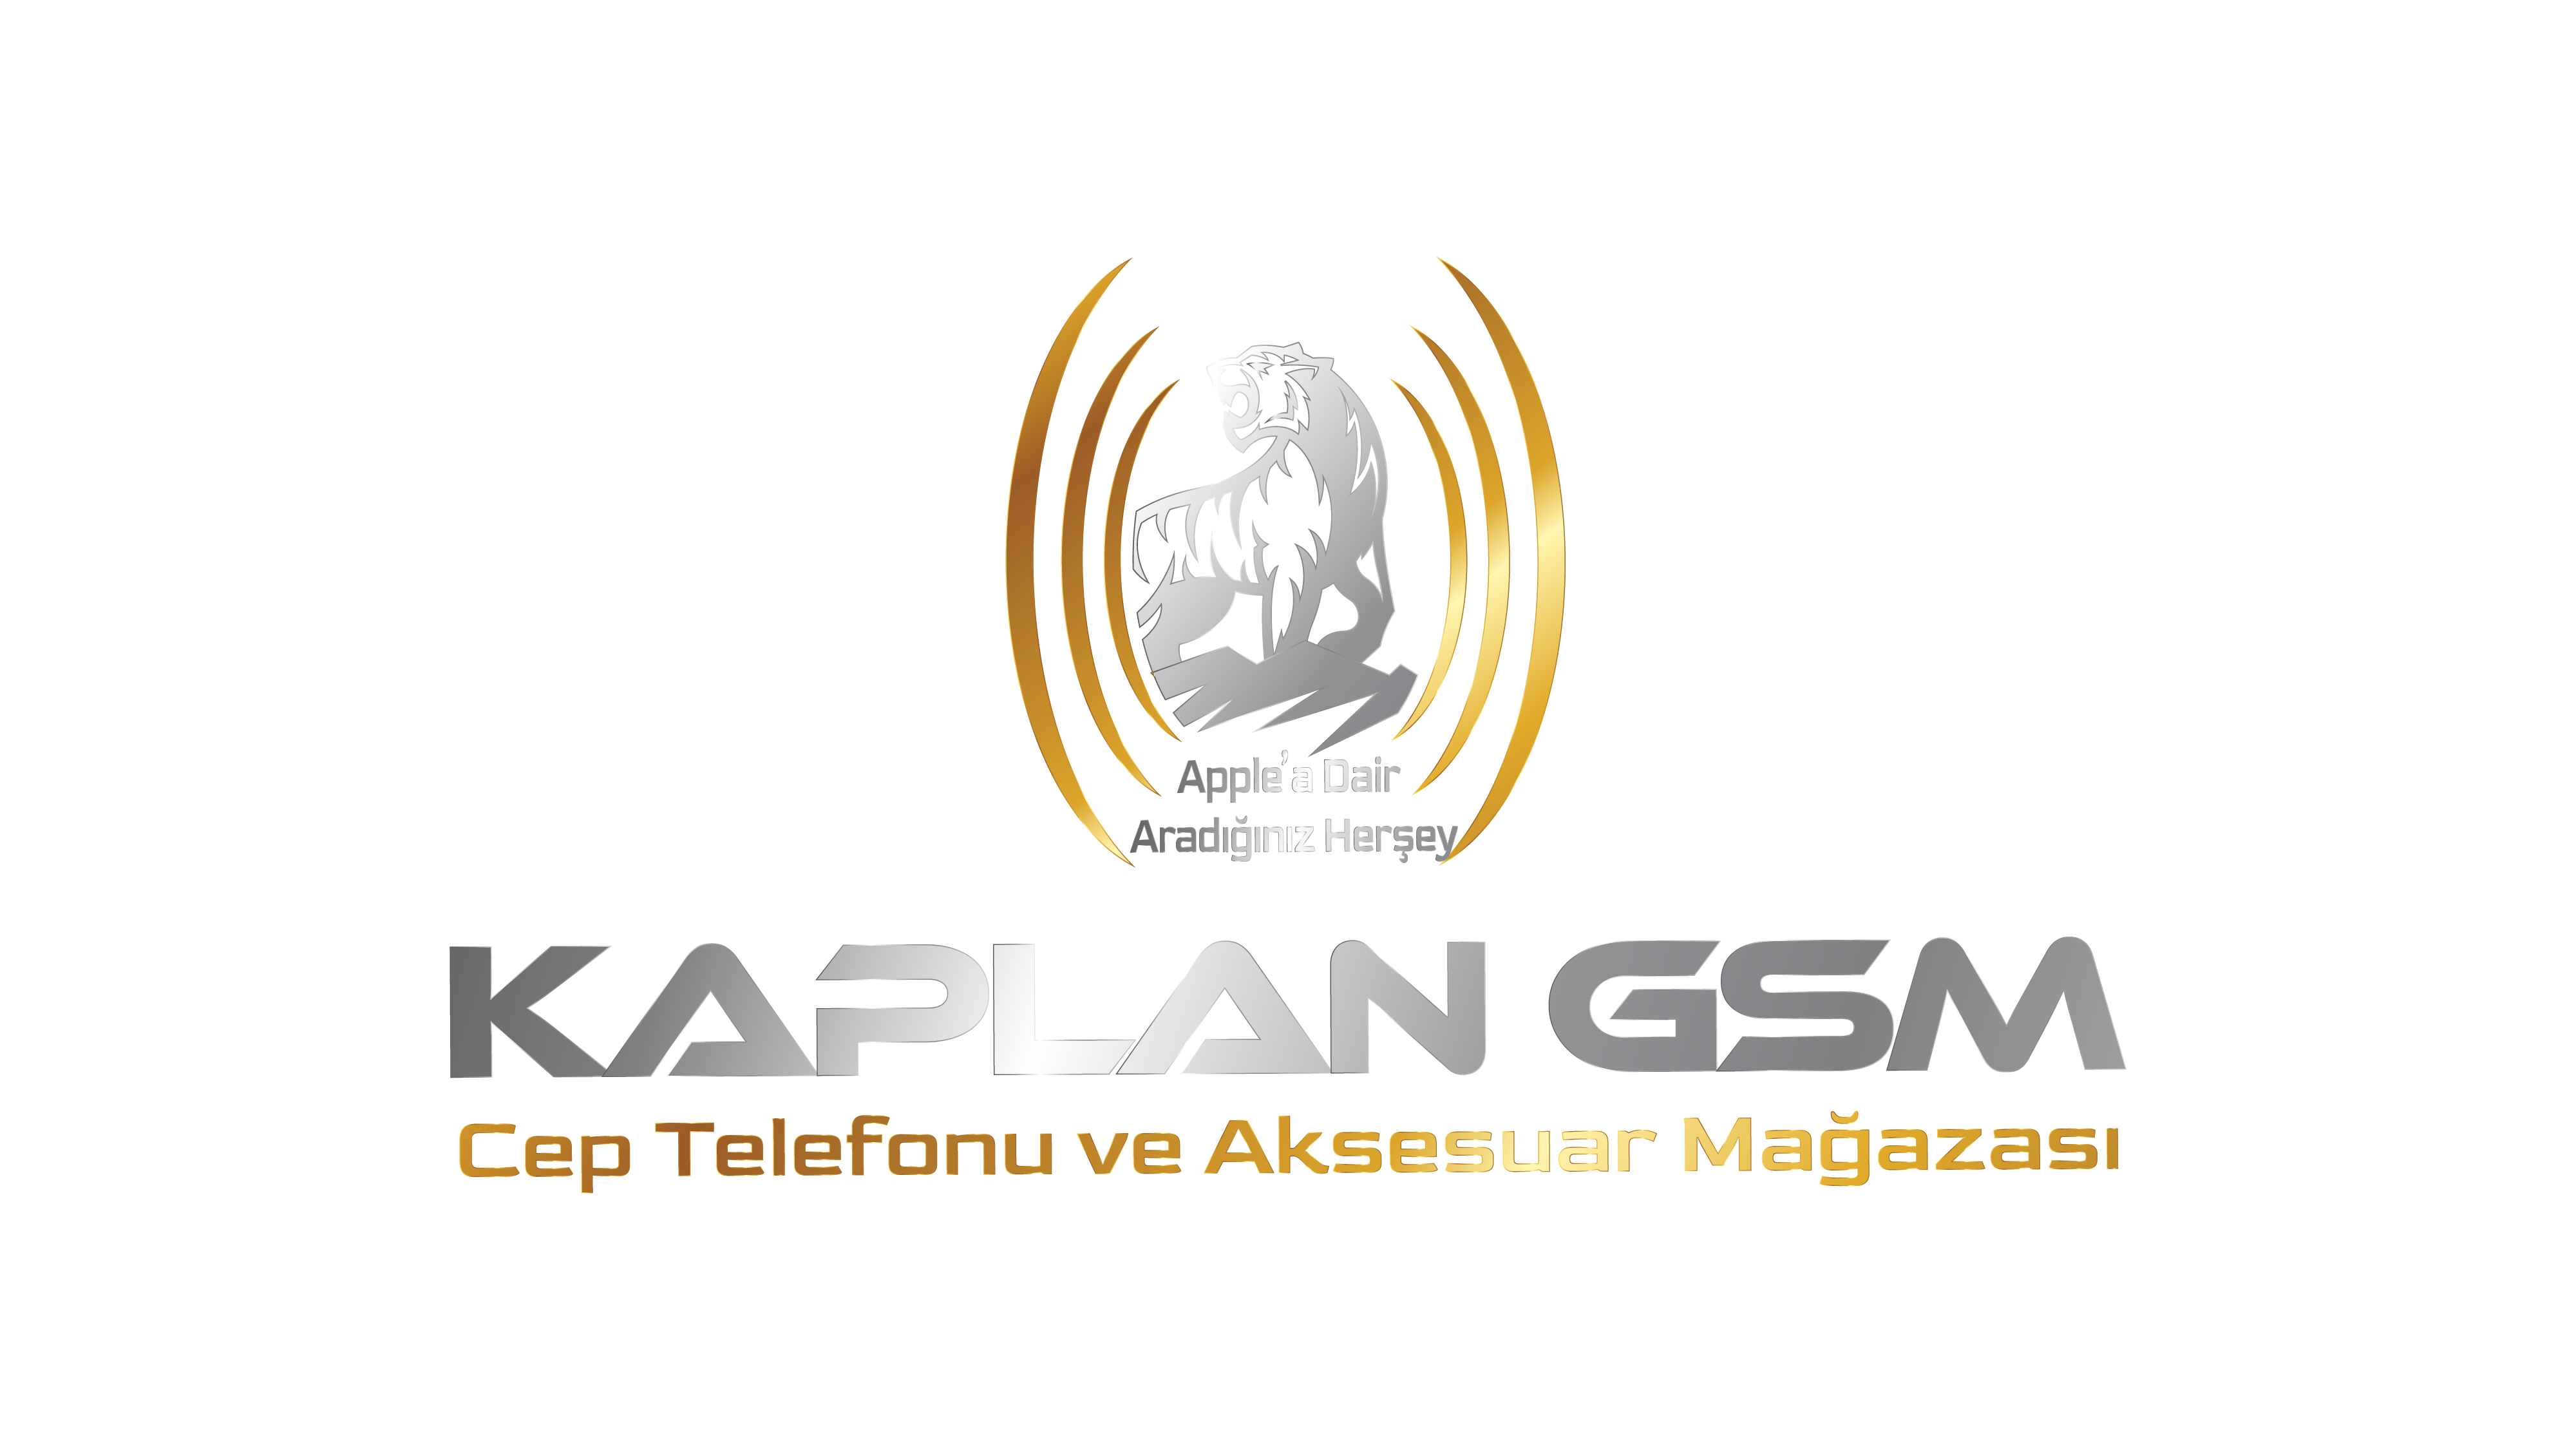 Kaplan Group 